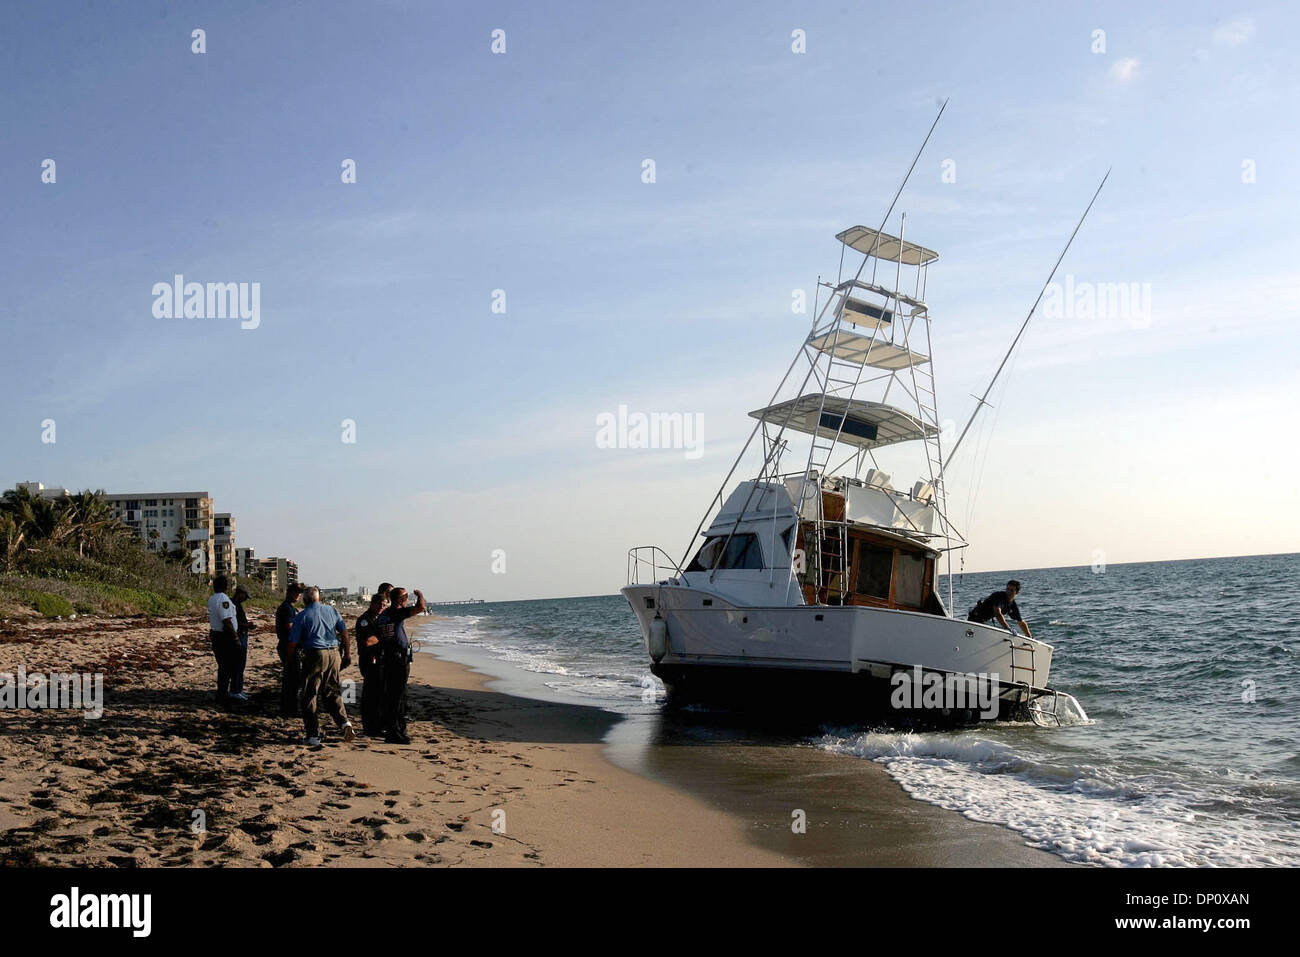 Apr 07, 2006 ; Hillsboro, FL, USA ; un bateau rempli de plus de 44 personnes s'est échoué sur Hillsboro Beach vendredi matin entre 6 et 6 h 30 Le bateau était rempli d'Haitains, un Cubain et un Jamaïcain. Ici, c'est le bateau les migrants sont venus à bord. Crédit obligatoire : Photo par Libby Volgyes/Palm Beach Post/ZUMA Press. (©) Copyright 2006 par Palm Beach Post Banque D'Images